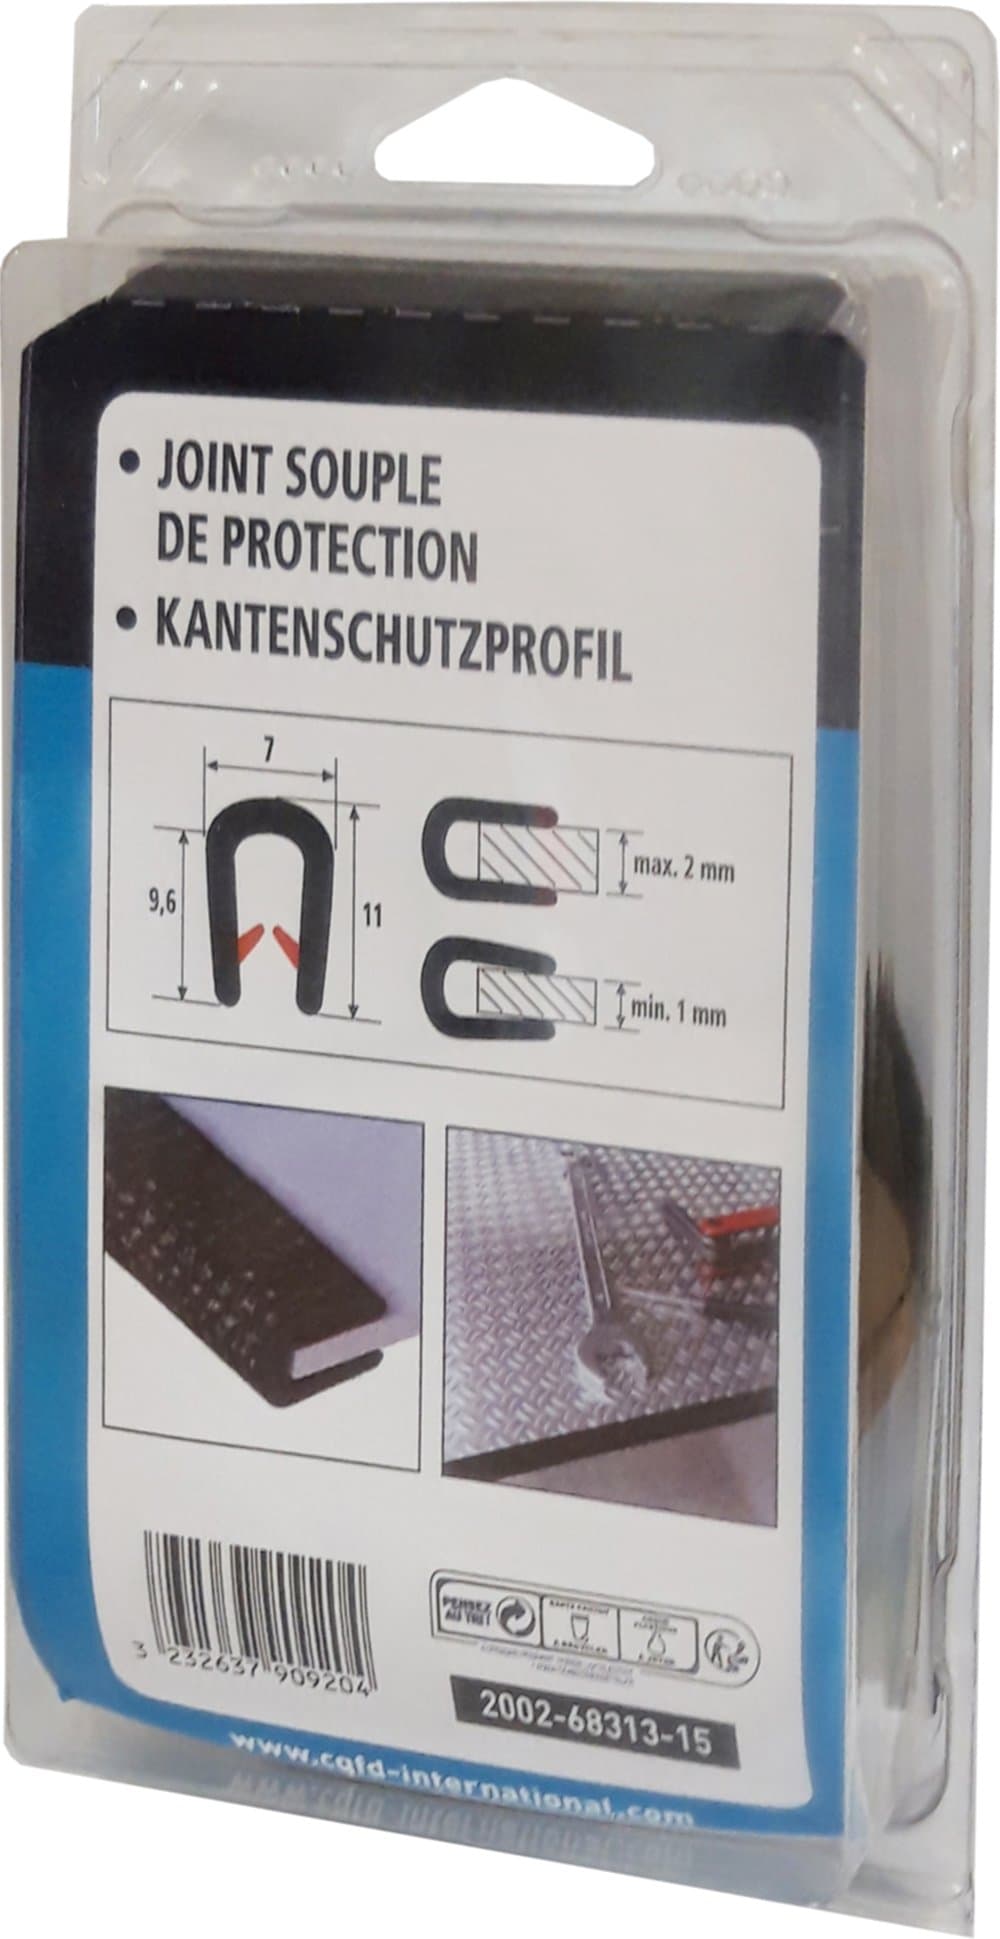 Protection PVC GRISE pour bord de tôle bricolage bord tranchant verre acier